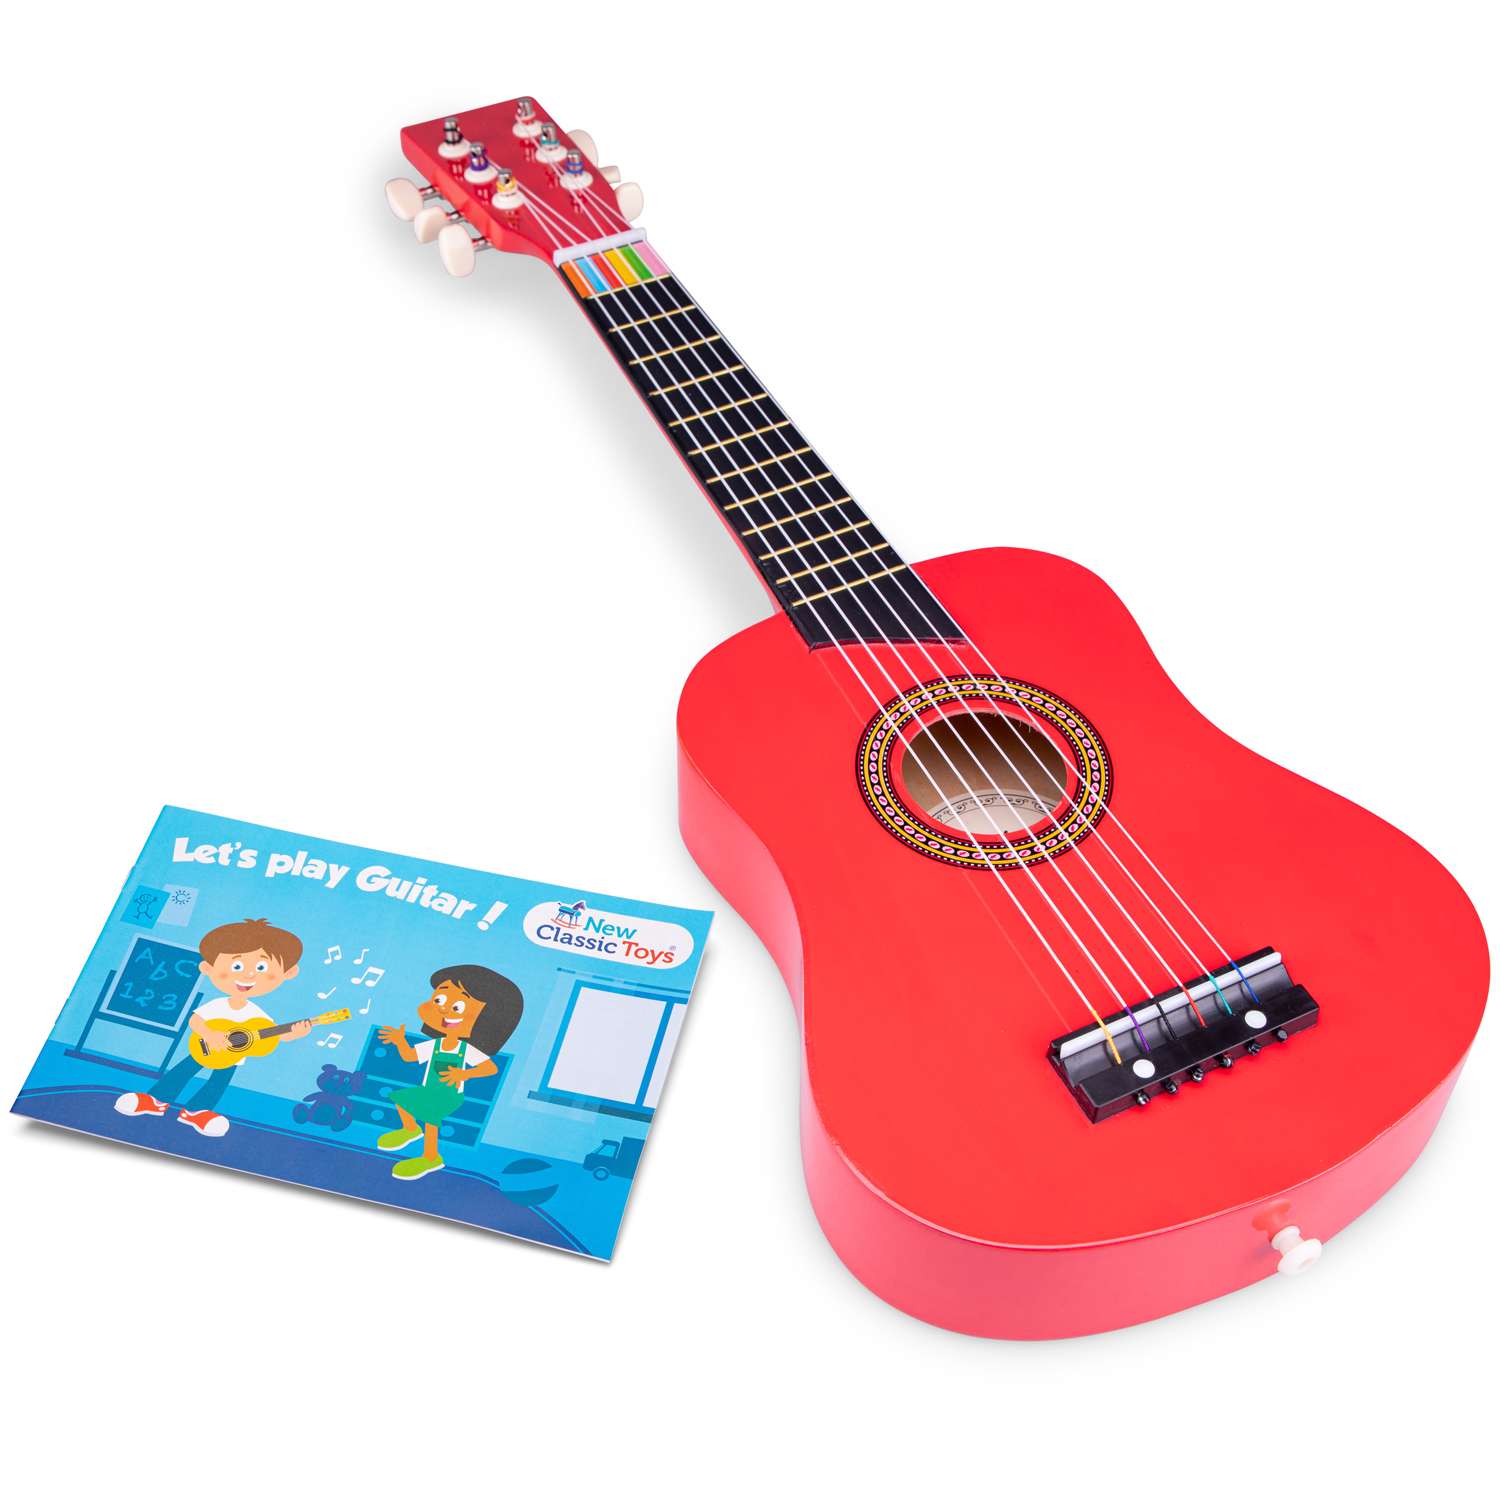 Гитара New Classic Toys 64 см. красная 10303 - фото 2